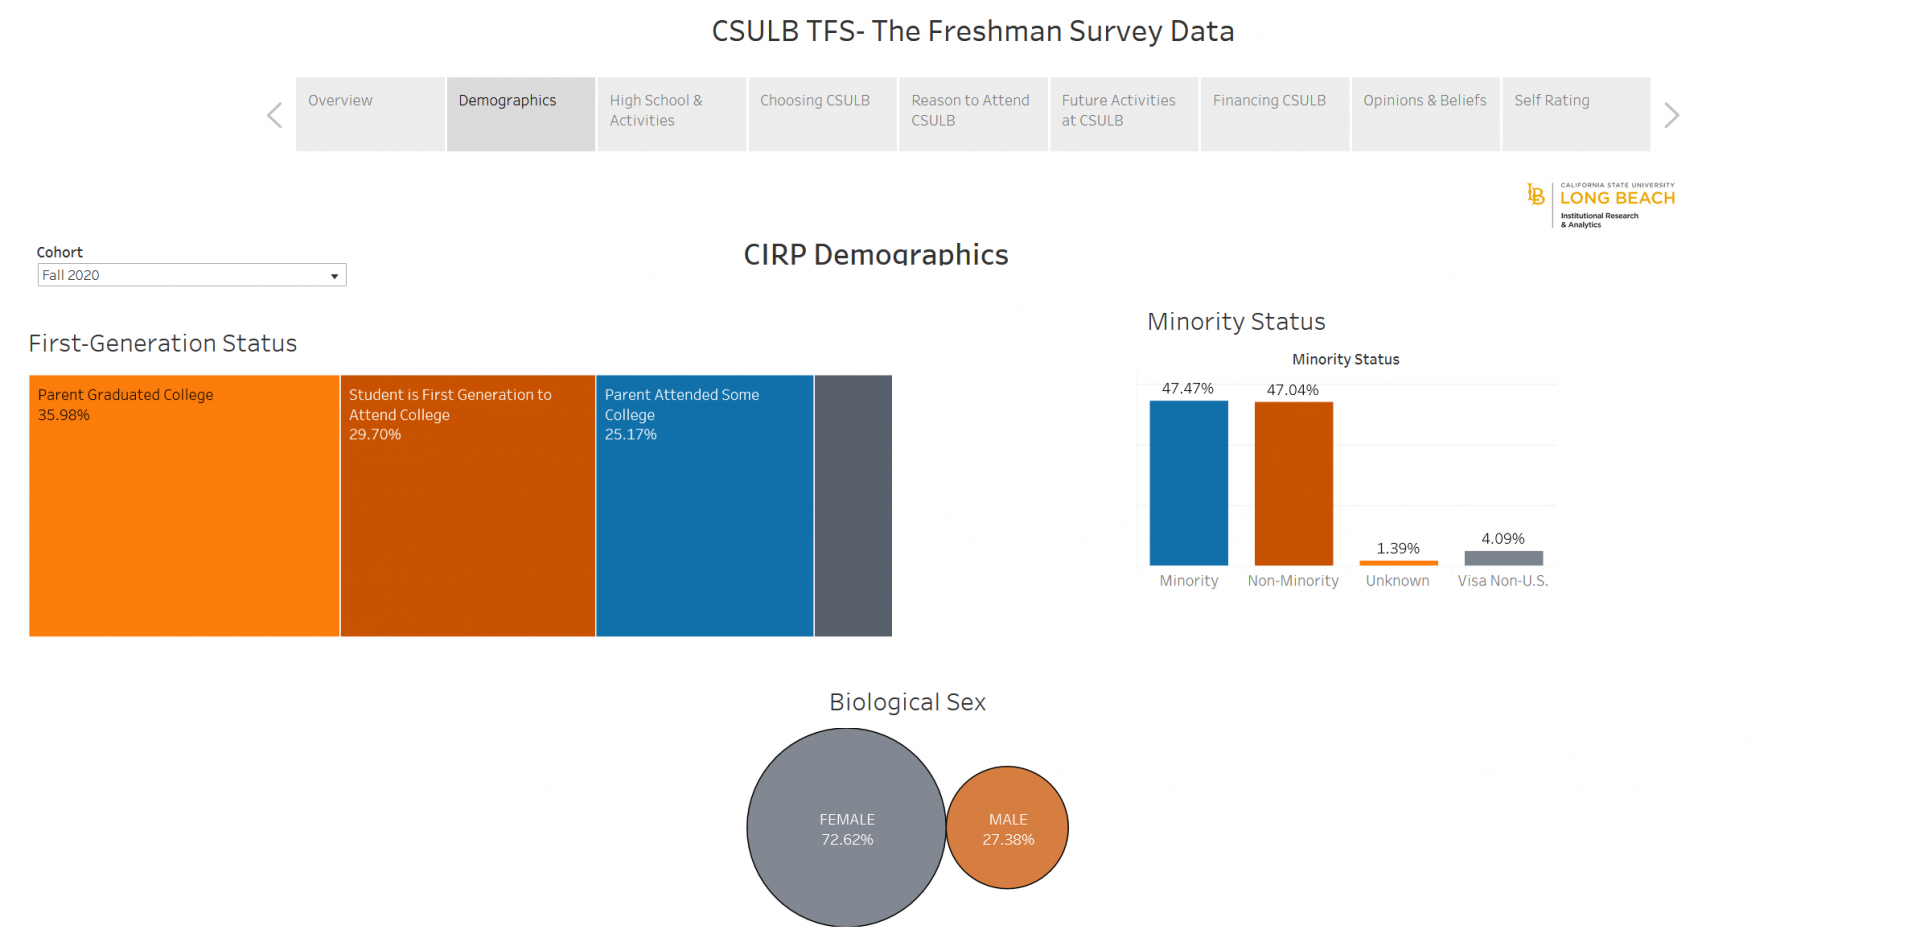 CIRP Demographics Sap Shot